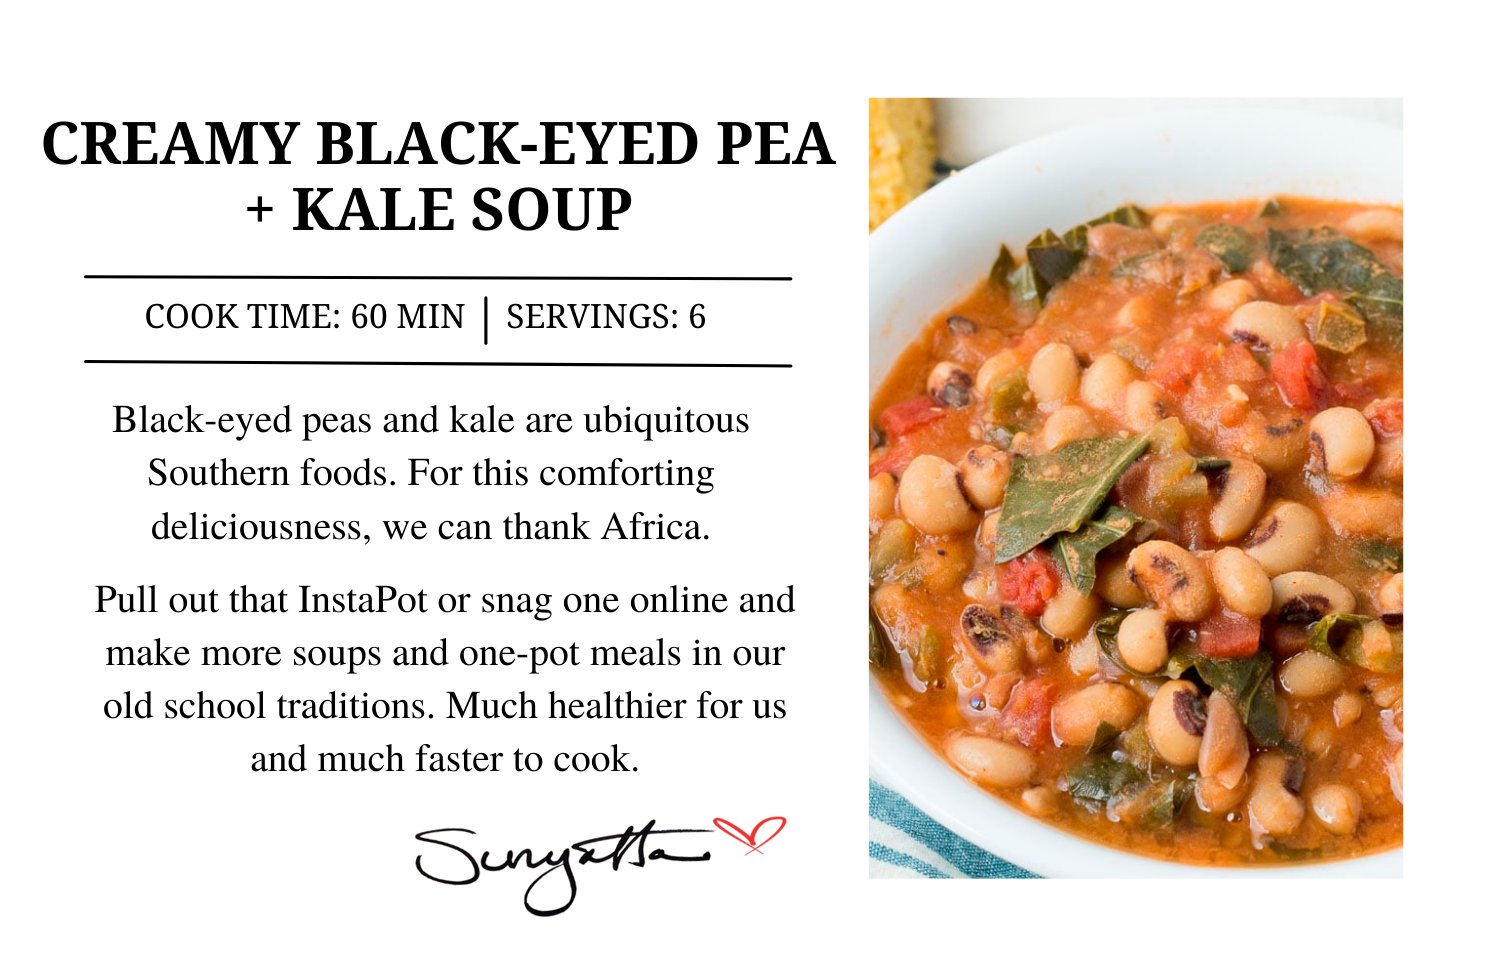 Creamy Black-Eyed Pea + Kale Soup